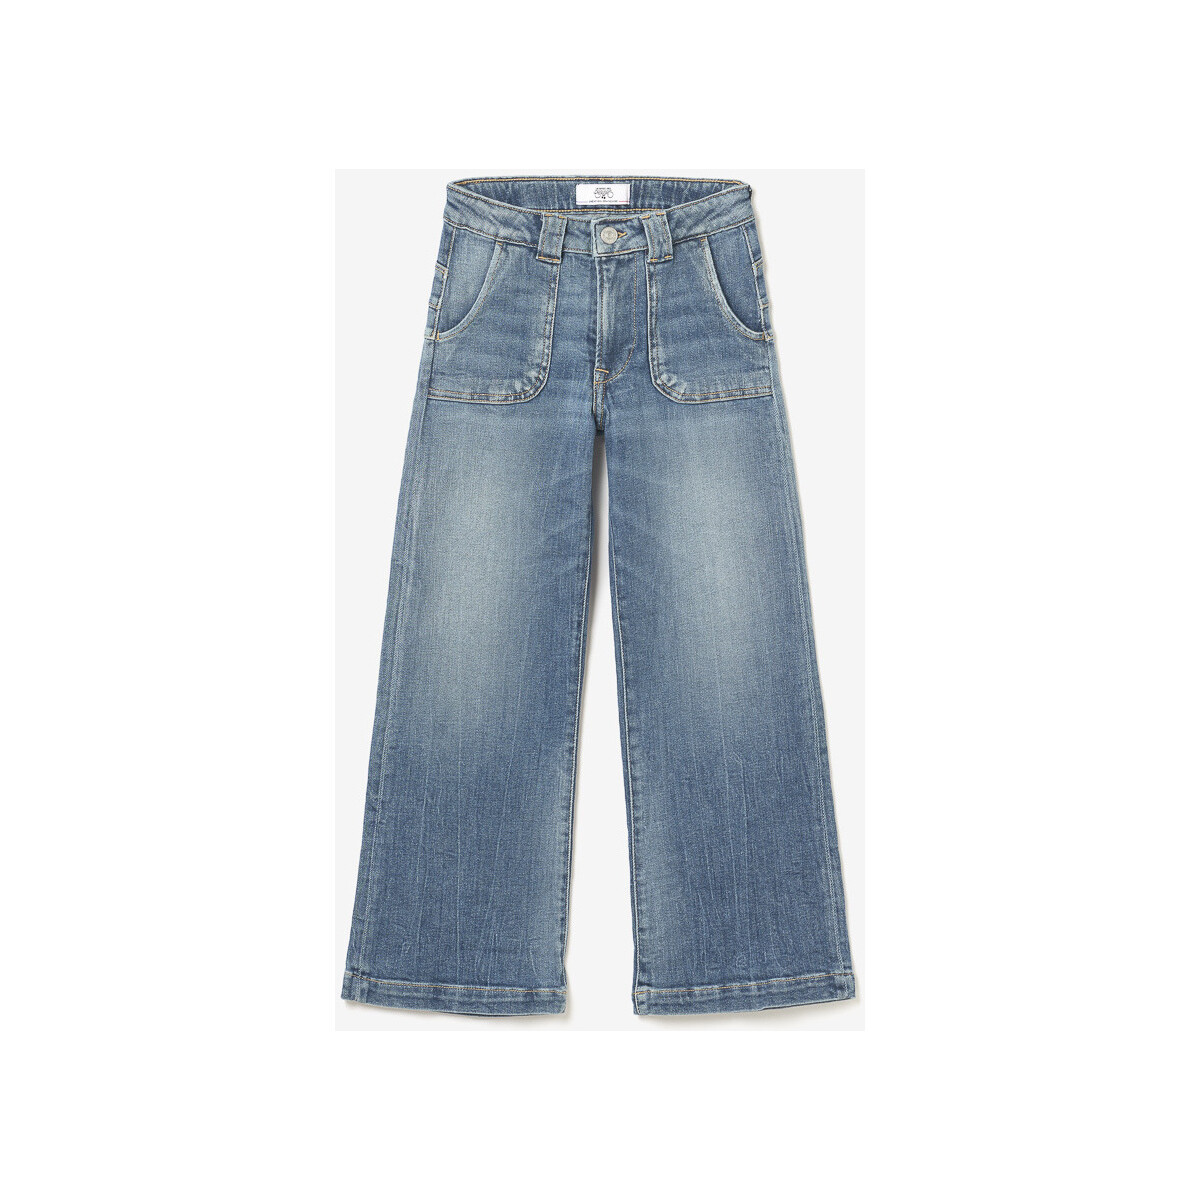 Abbigliamento Bambina Jeans Le Temps des Cerises Jeans  pulp flare, lunghezza 34 Blu